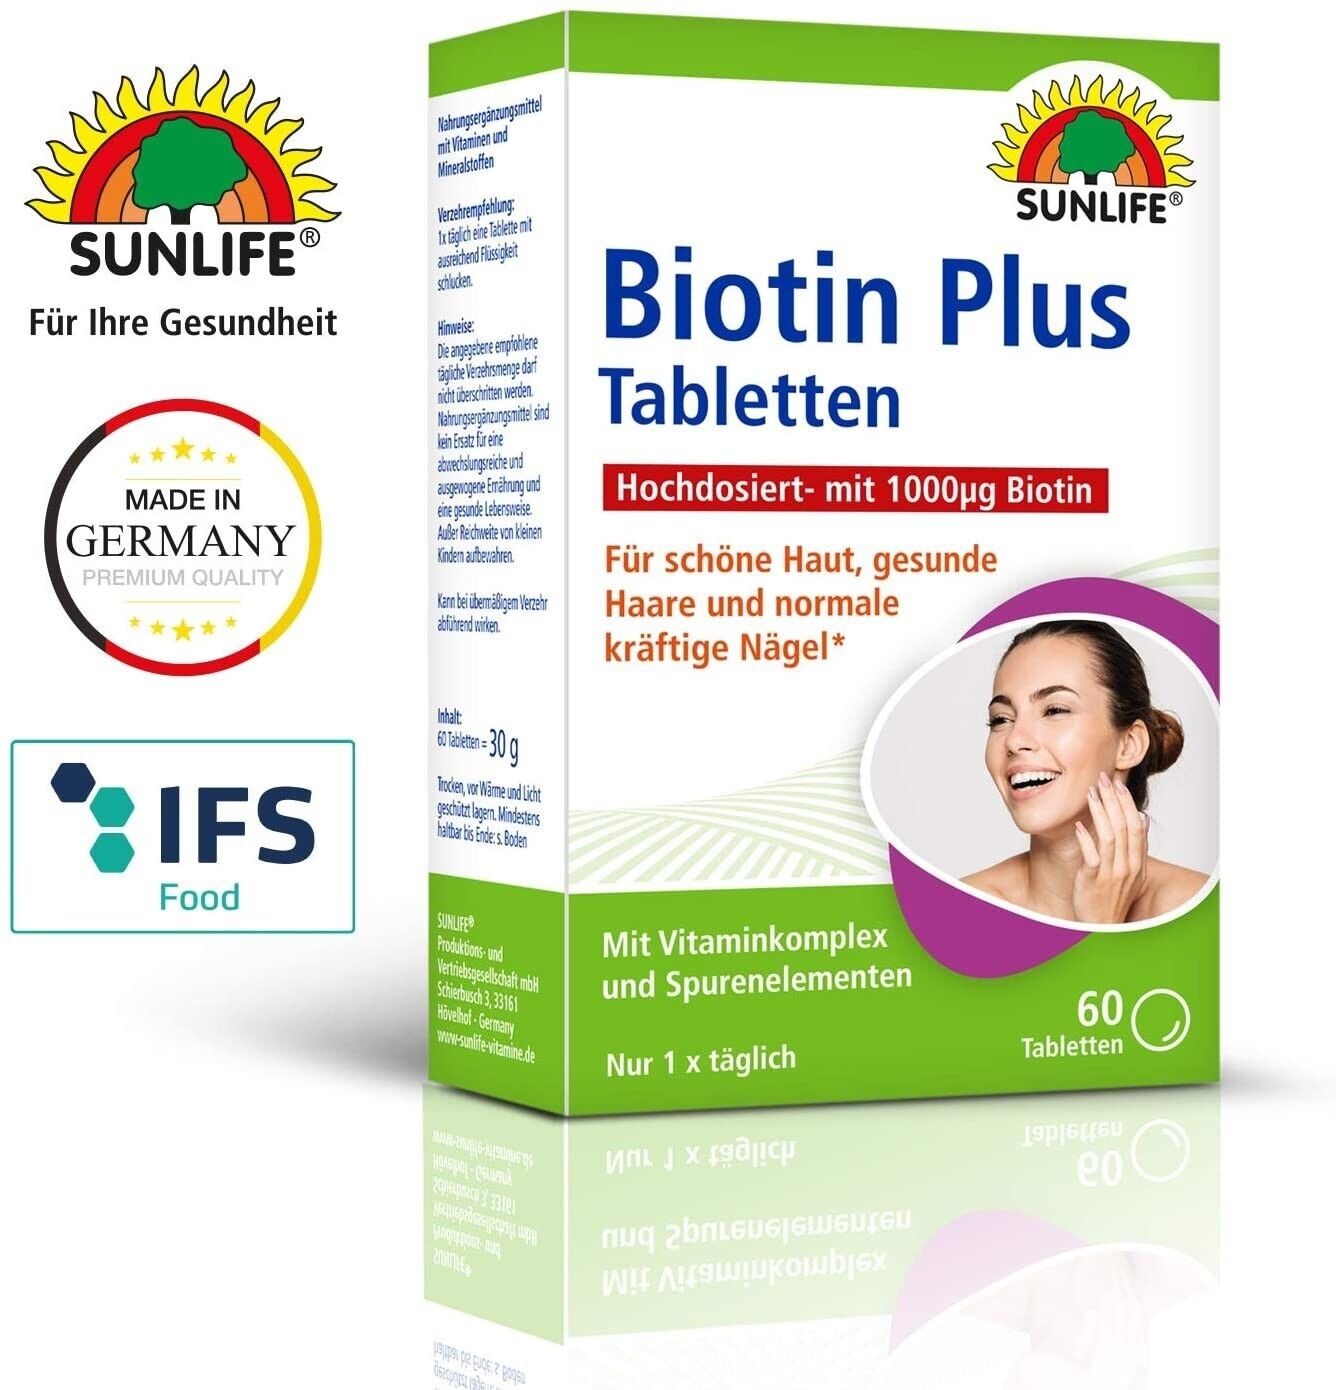 SUNLIFE Biotin Plus: Für schöne Haut, gesunde Haare und normale kräftige Nägel, mit Vitamin-Komplex, 60 Tabletten